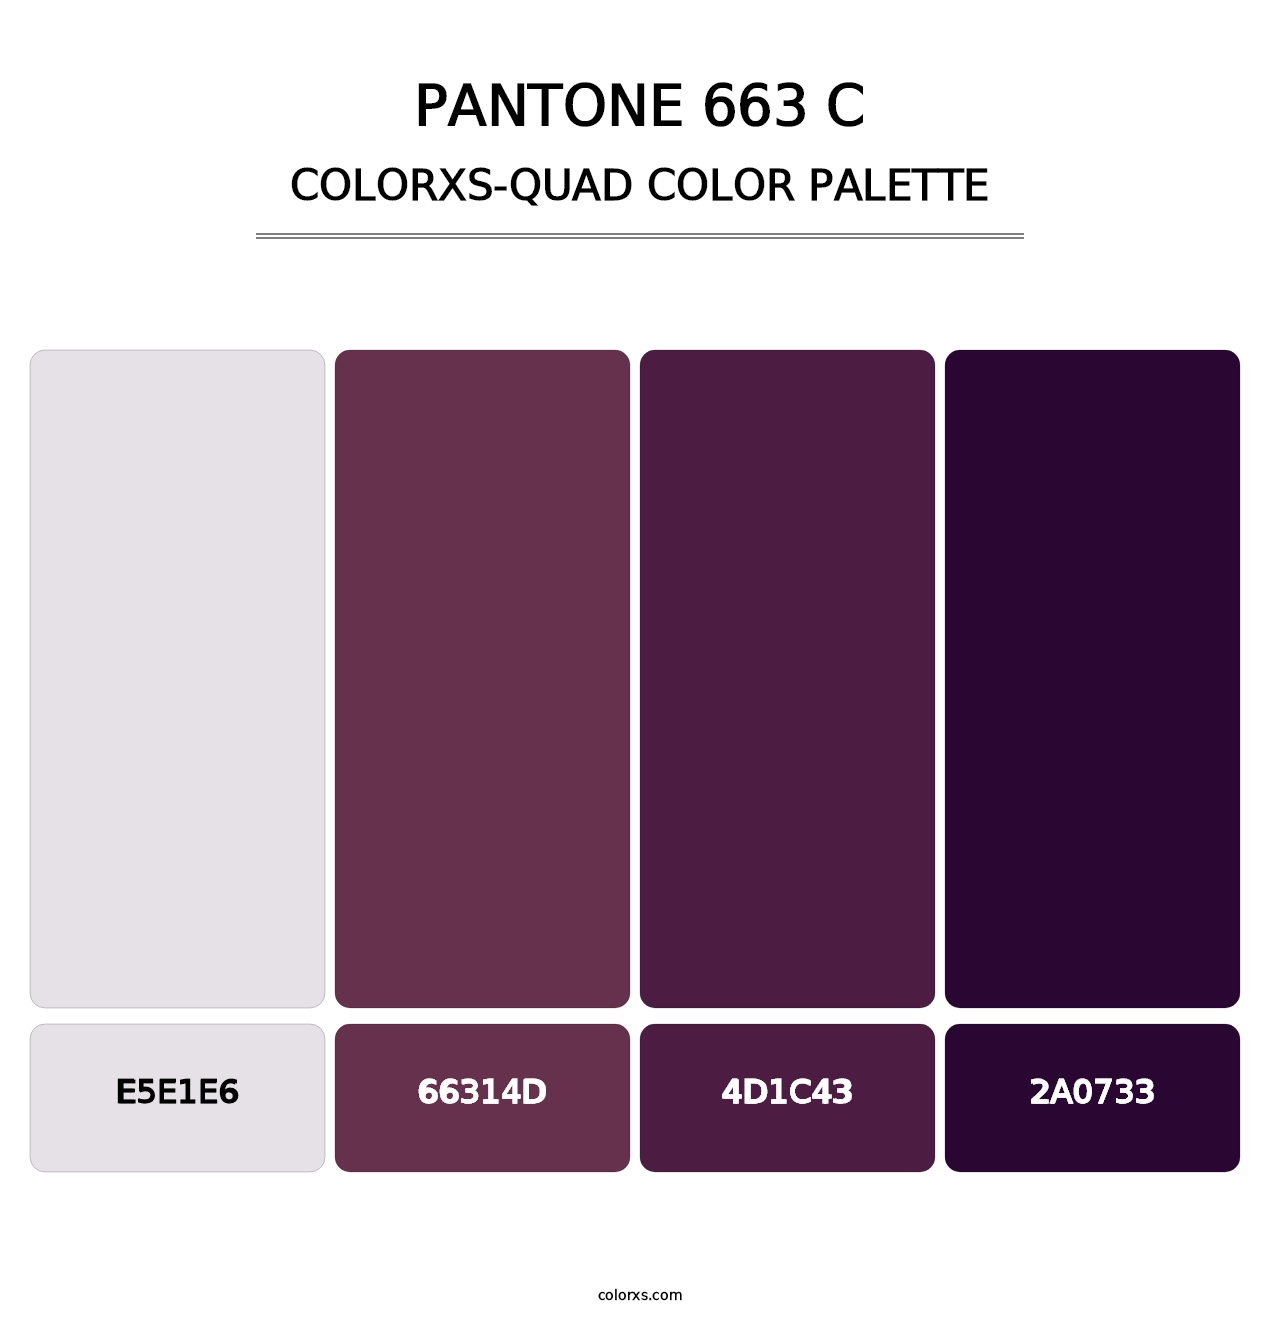 PANTONE 663 C - Colorxs Quad Palette